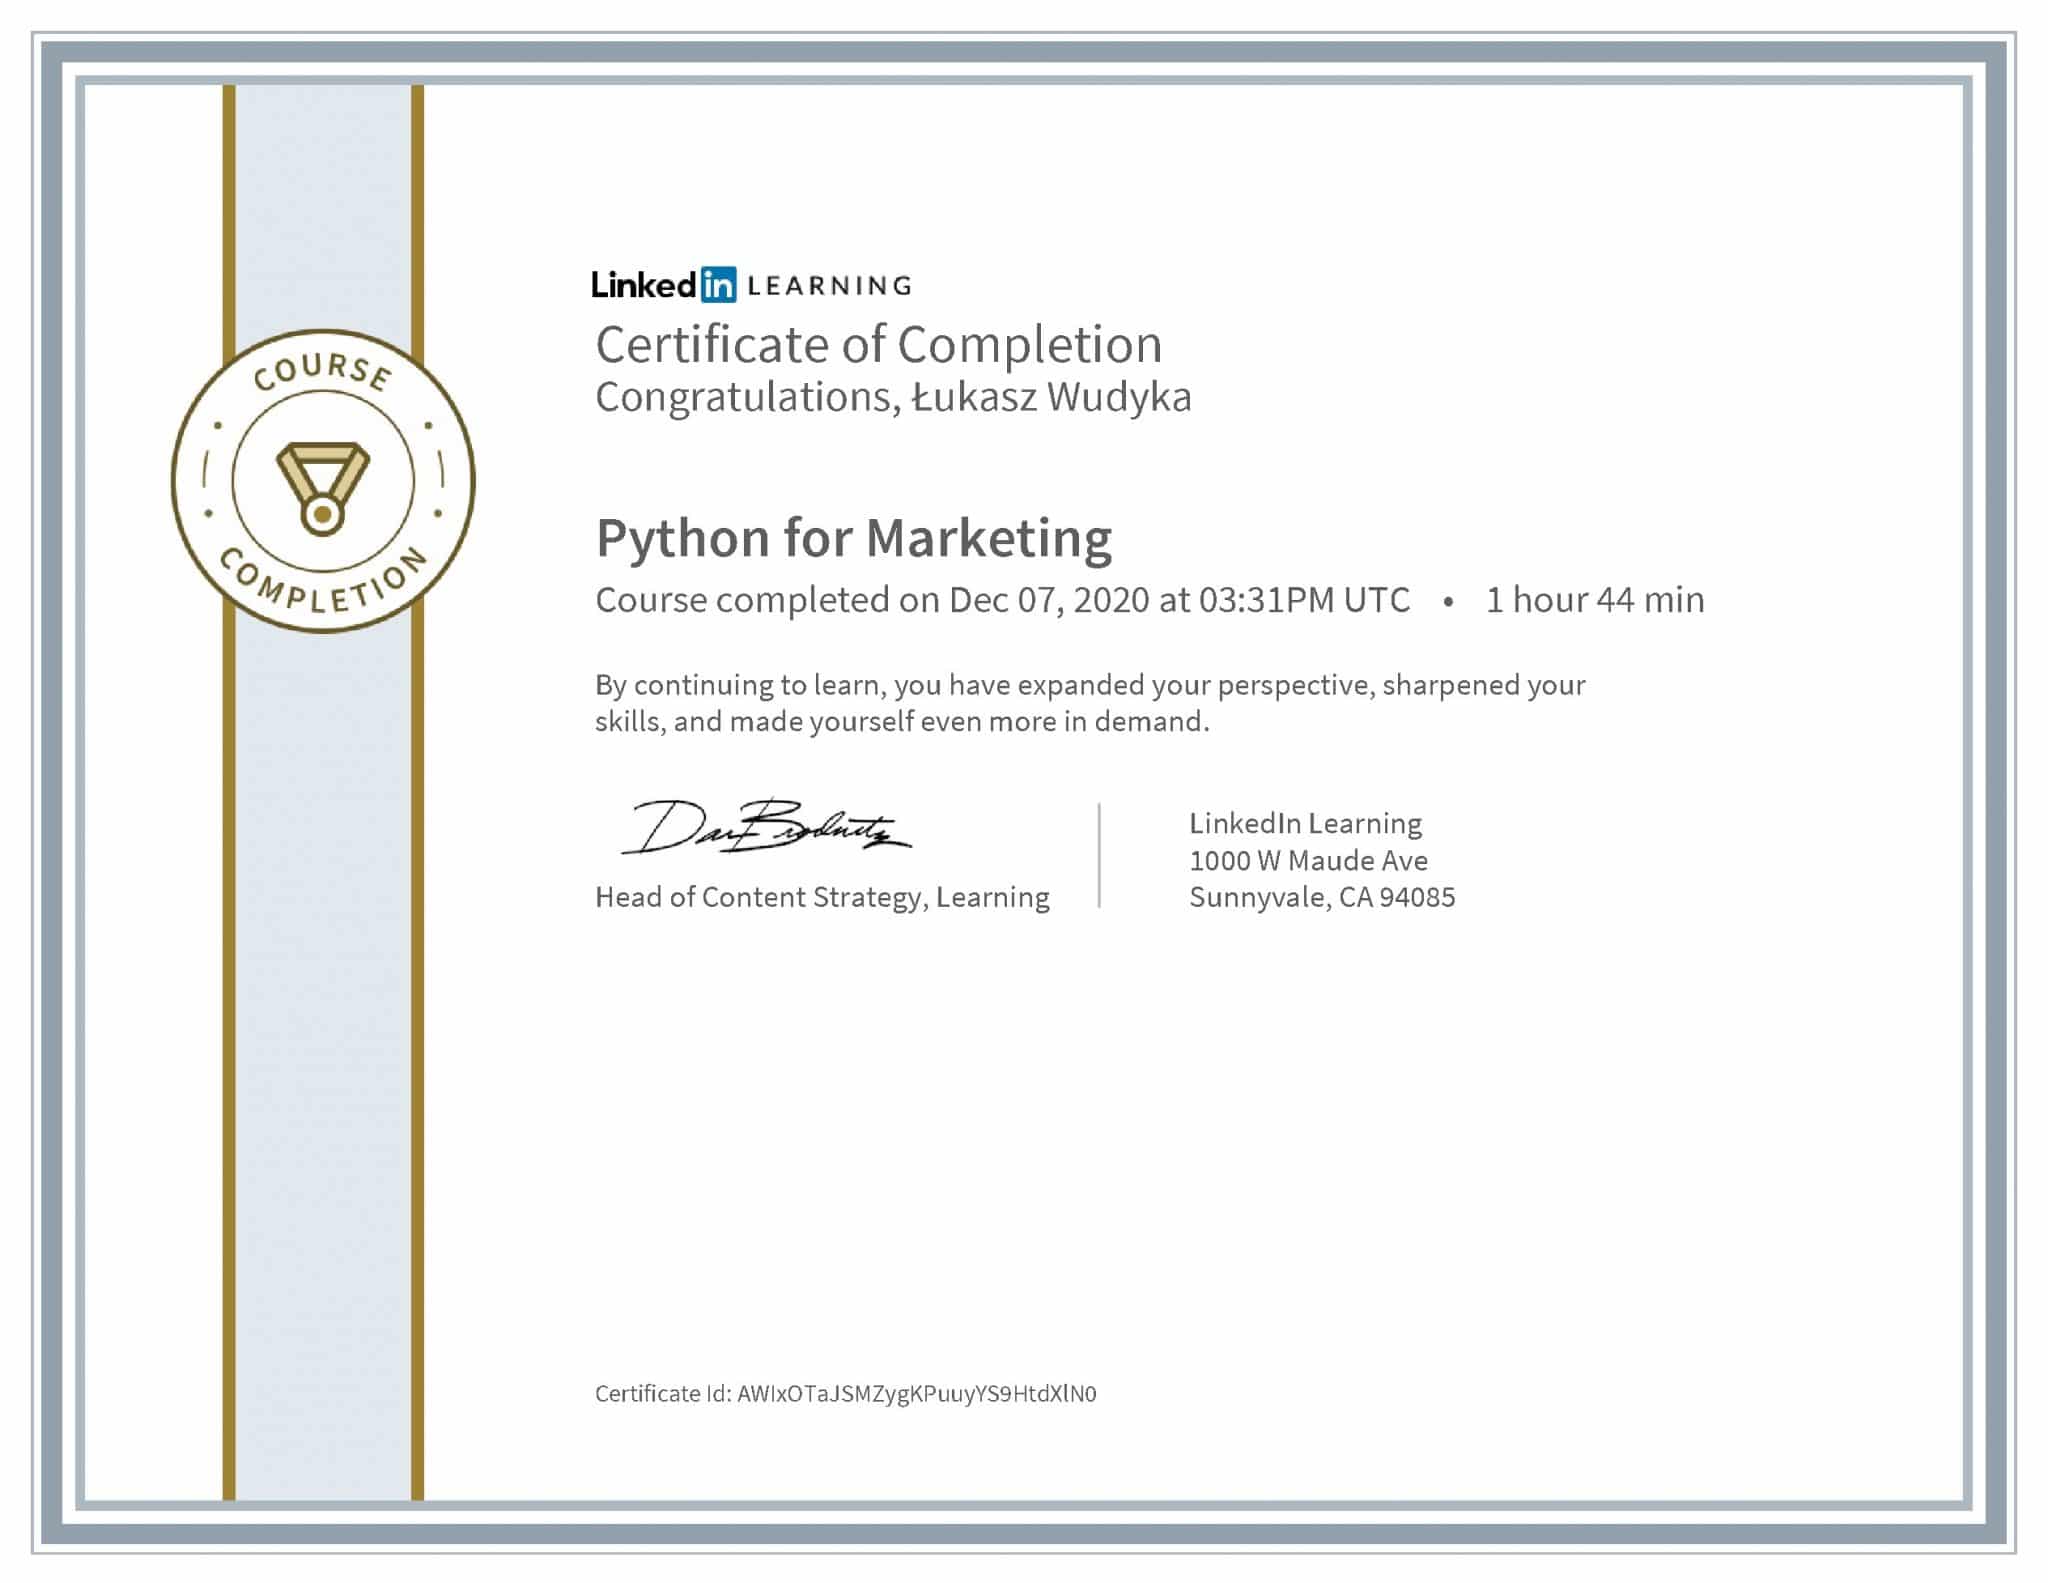 Łukasz Wudyka certyfikat LinkedIn Python for Marketing